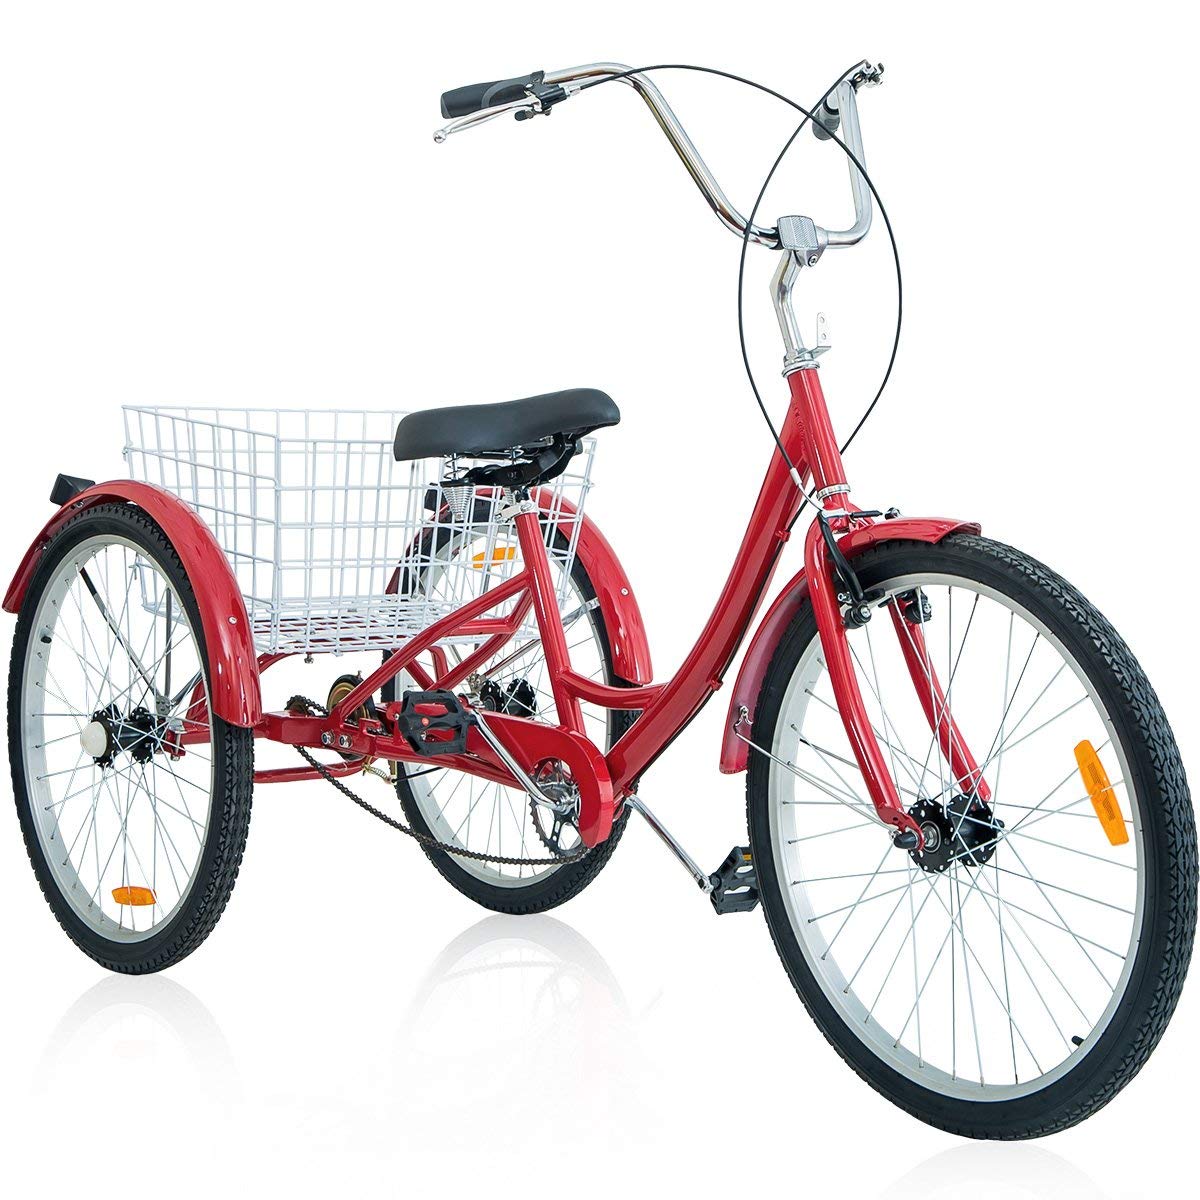  Merax 26 Inch 3 Wheel Bike Adult Tricycle Trike Cruise Bike